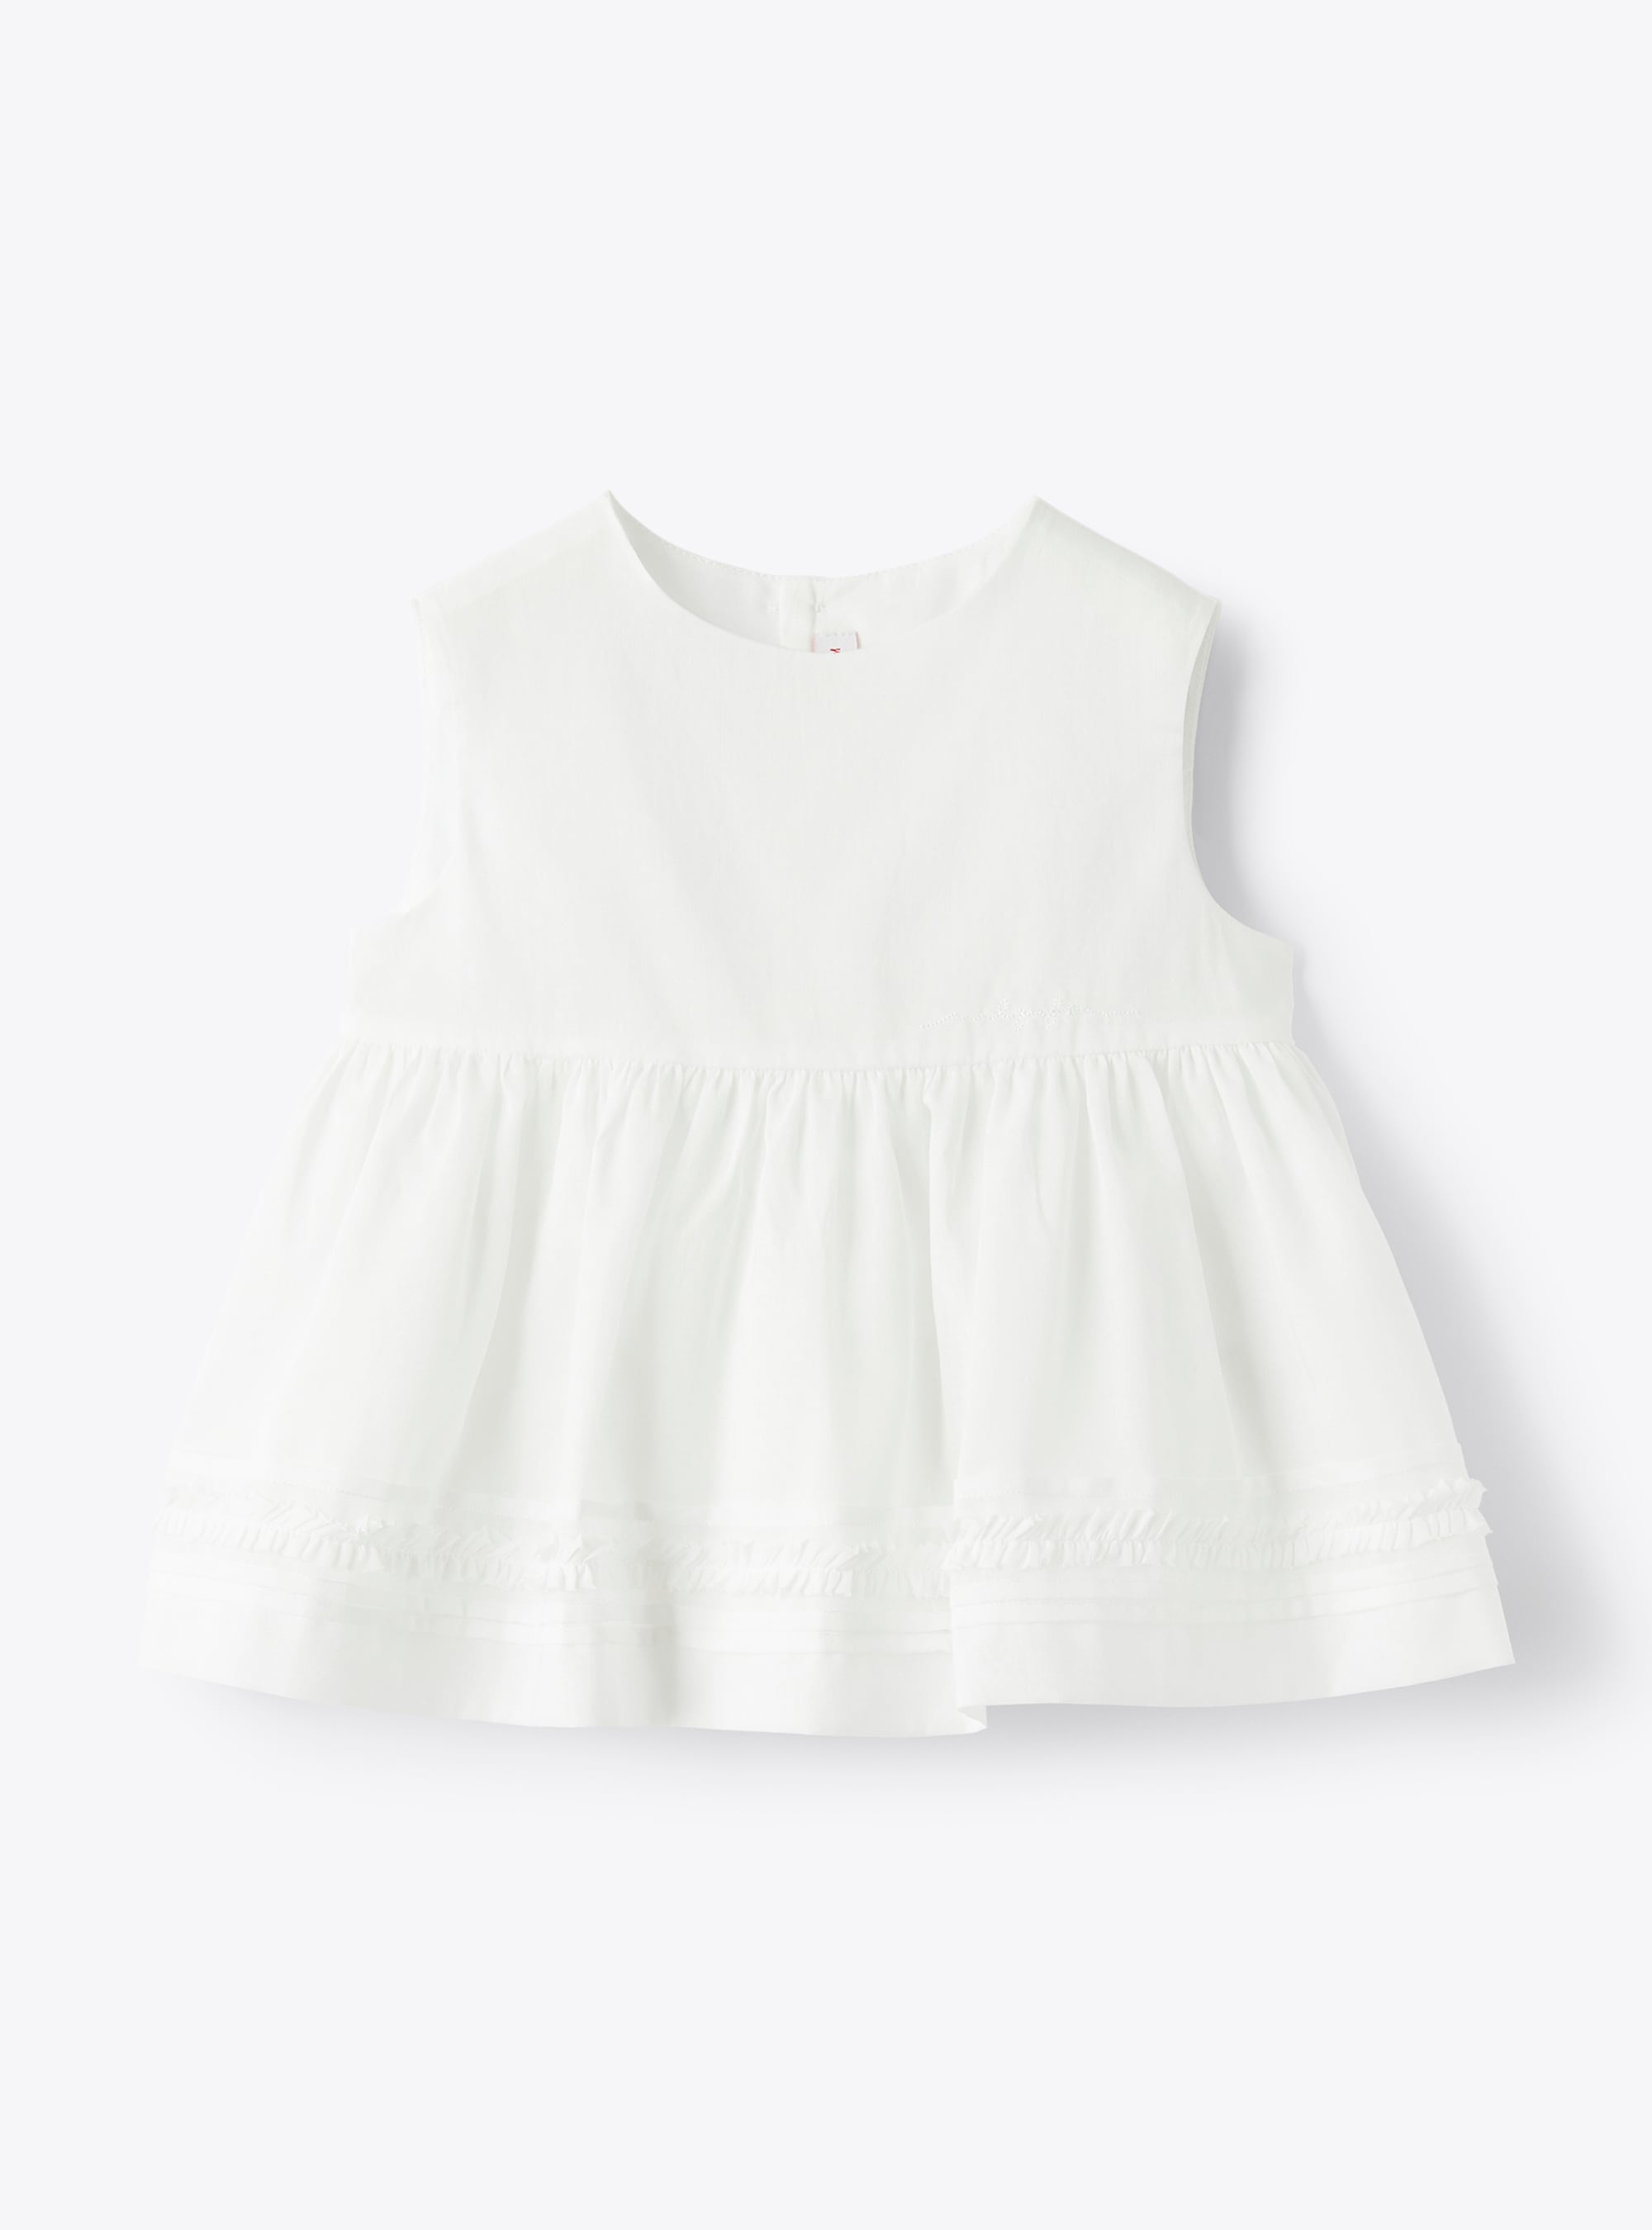 Sleeveless top in white cotton voile - White | Il Gufo